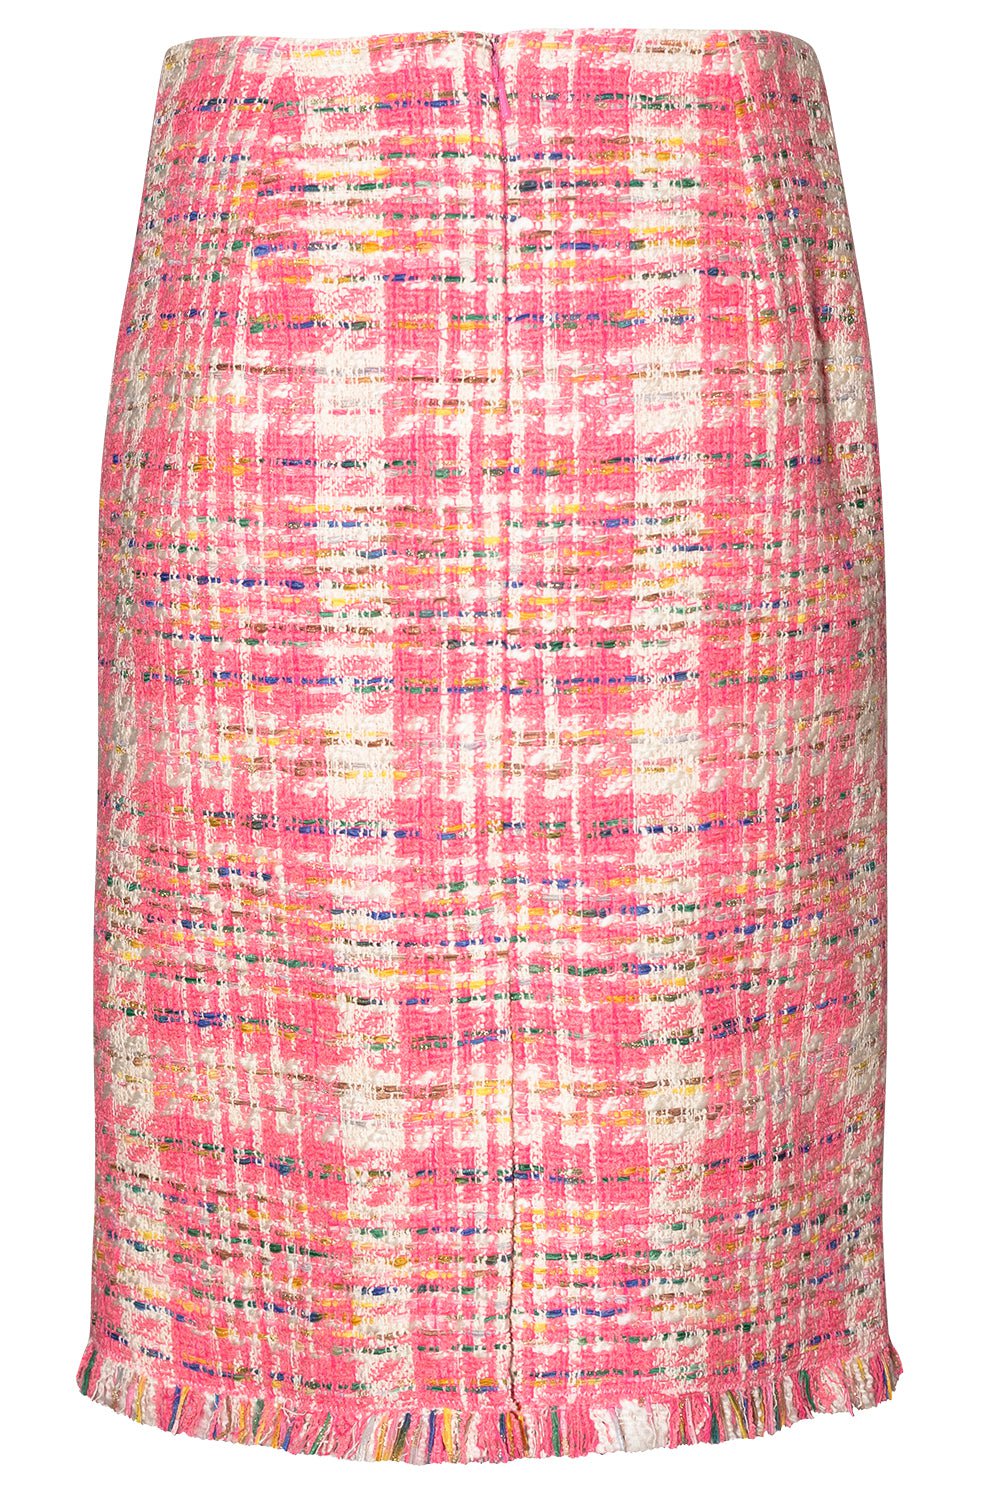 OSCAR DE LA RENTA-Tweed Pencil Skirt-